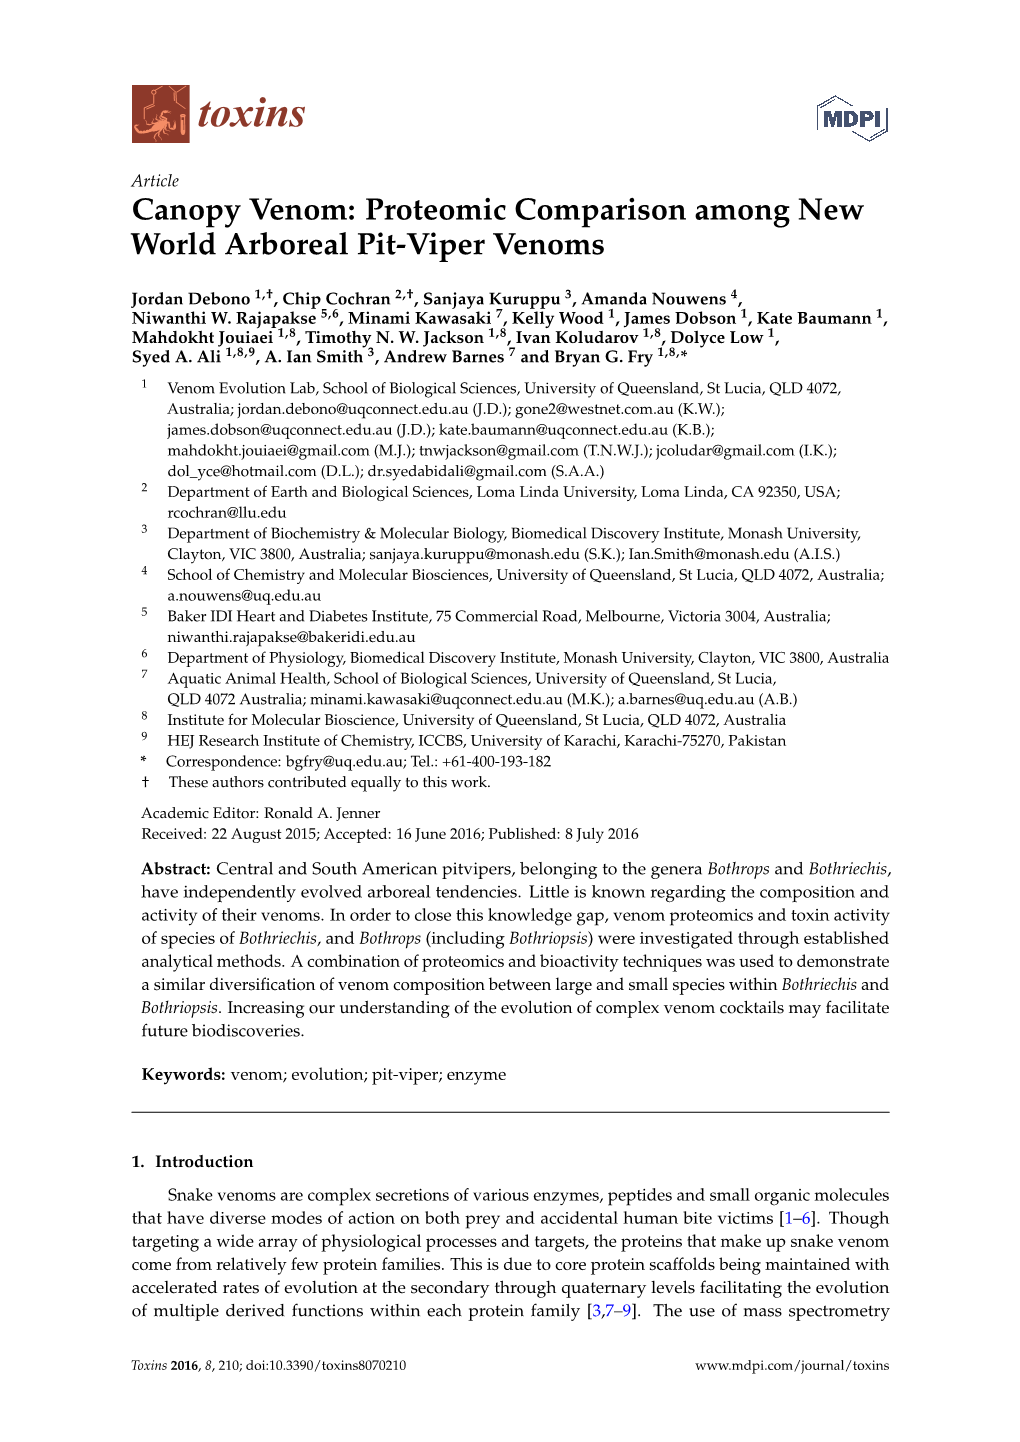 Canopy Venom: Proteomic Comparison Among New World Arboreal Pit-Viper Venoms